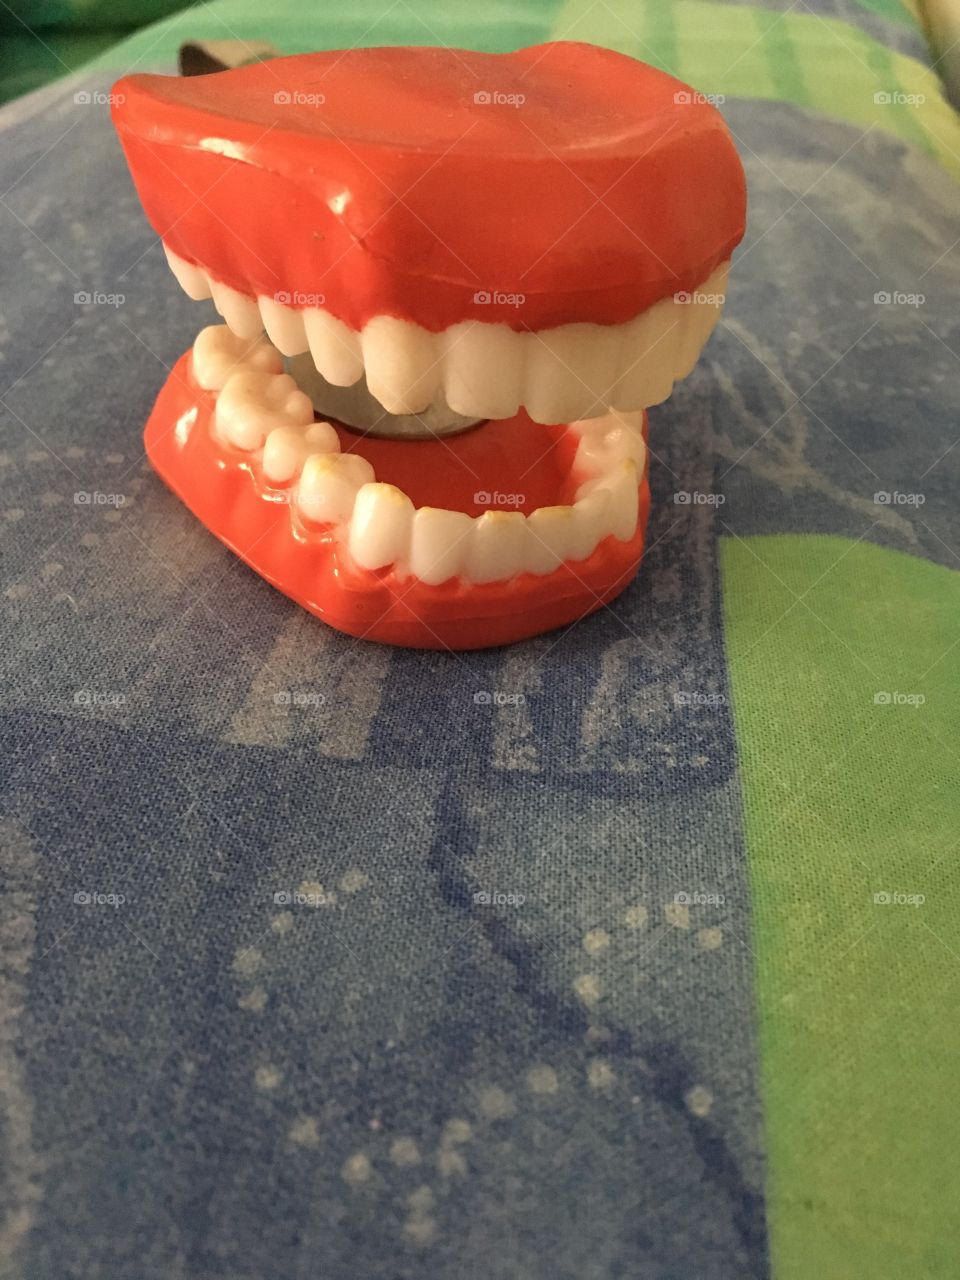 Teeths